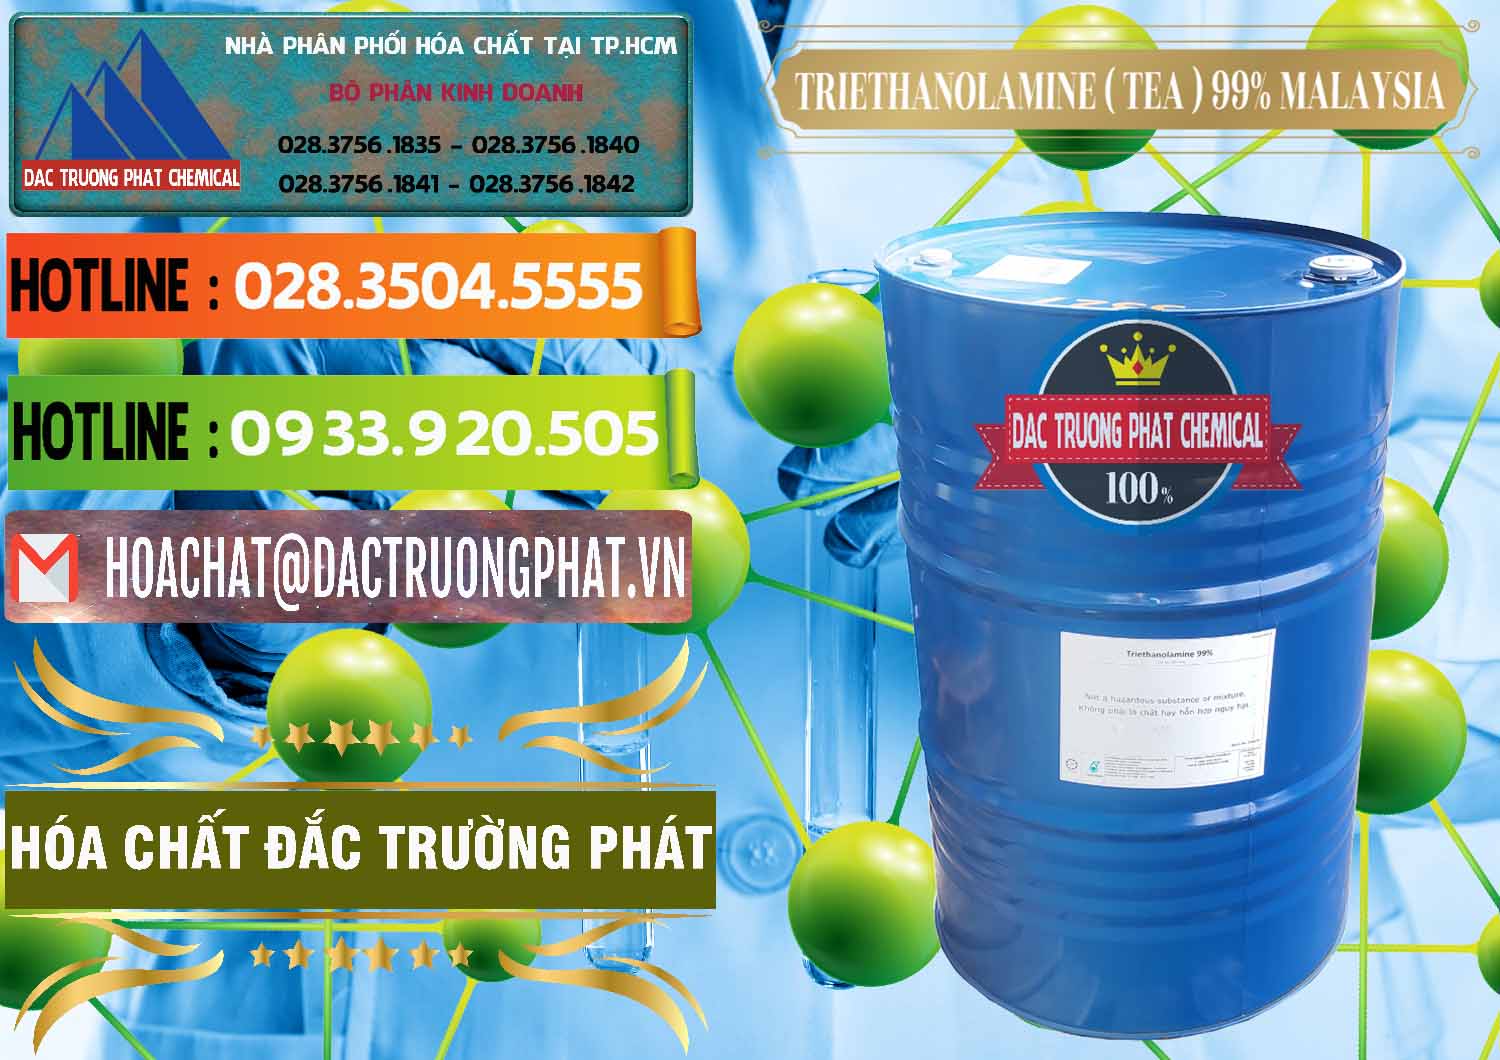 Đơn vị cung cấp và bán TEA - Triethanolamine 99% Mã Lai Malaysia - 0323 - Cty cung cấp ( kinh doanh ) hóa chất tại TP.HCM - cungcaphoachat.com.vn